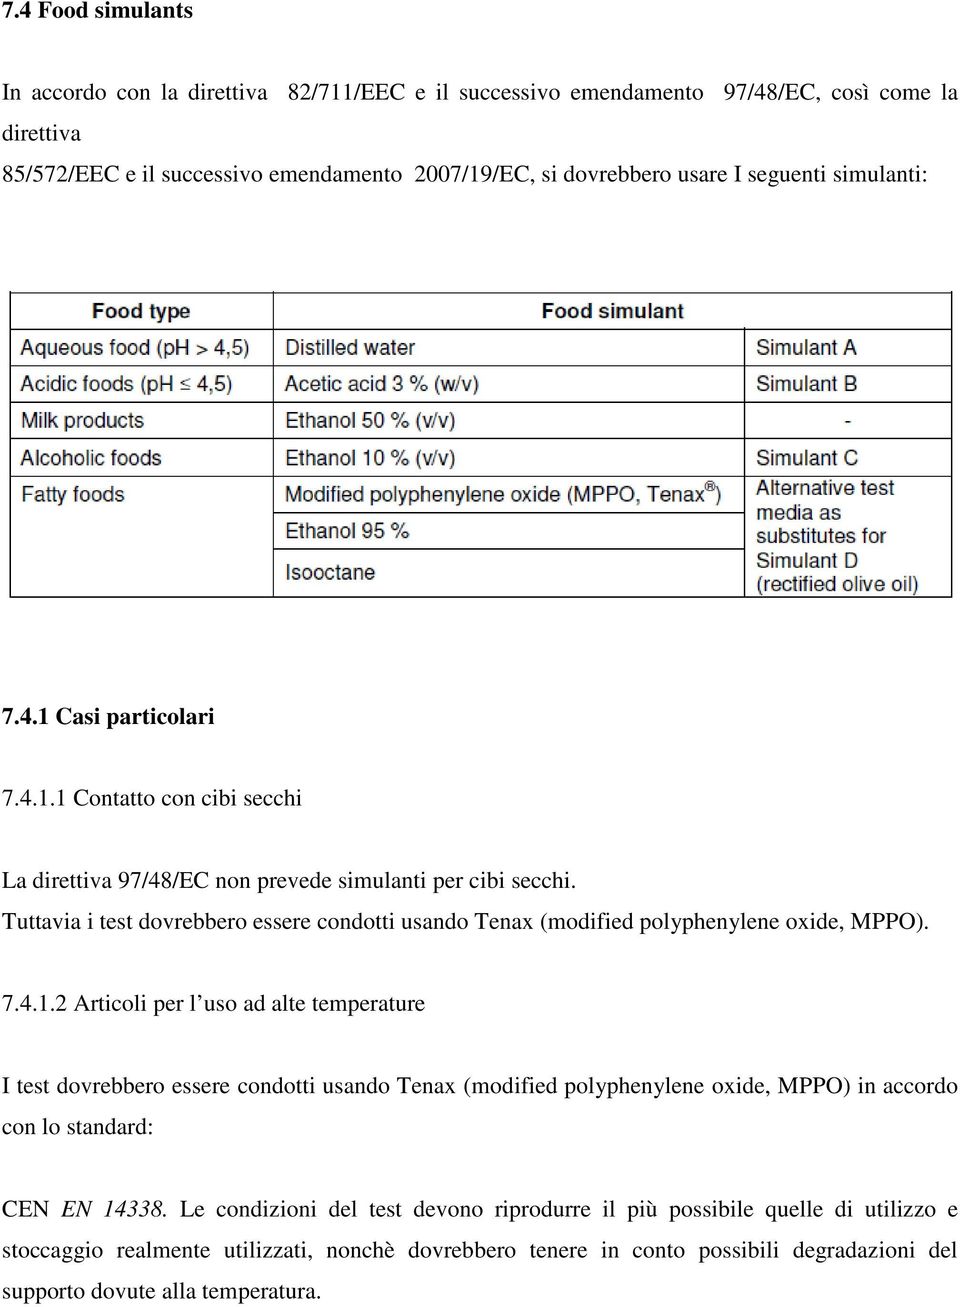 Tuttavia i test dovrebbero essere condotti usando Tenax (modified polyphenylene oxide, MPPO). 7.4.1.